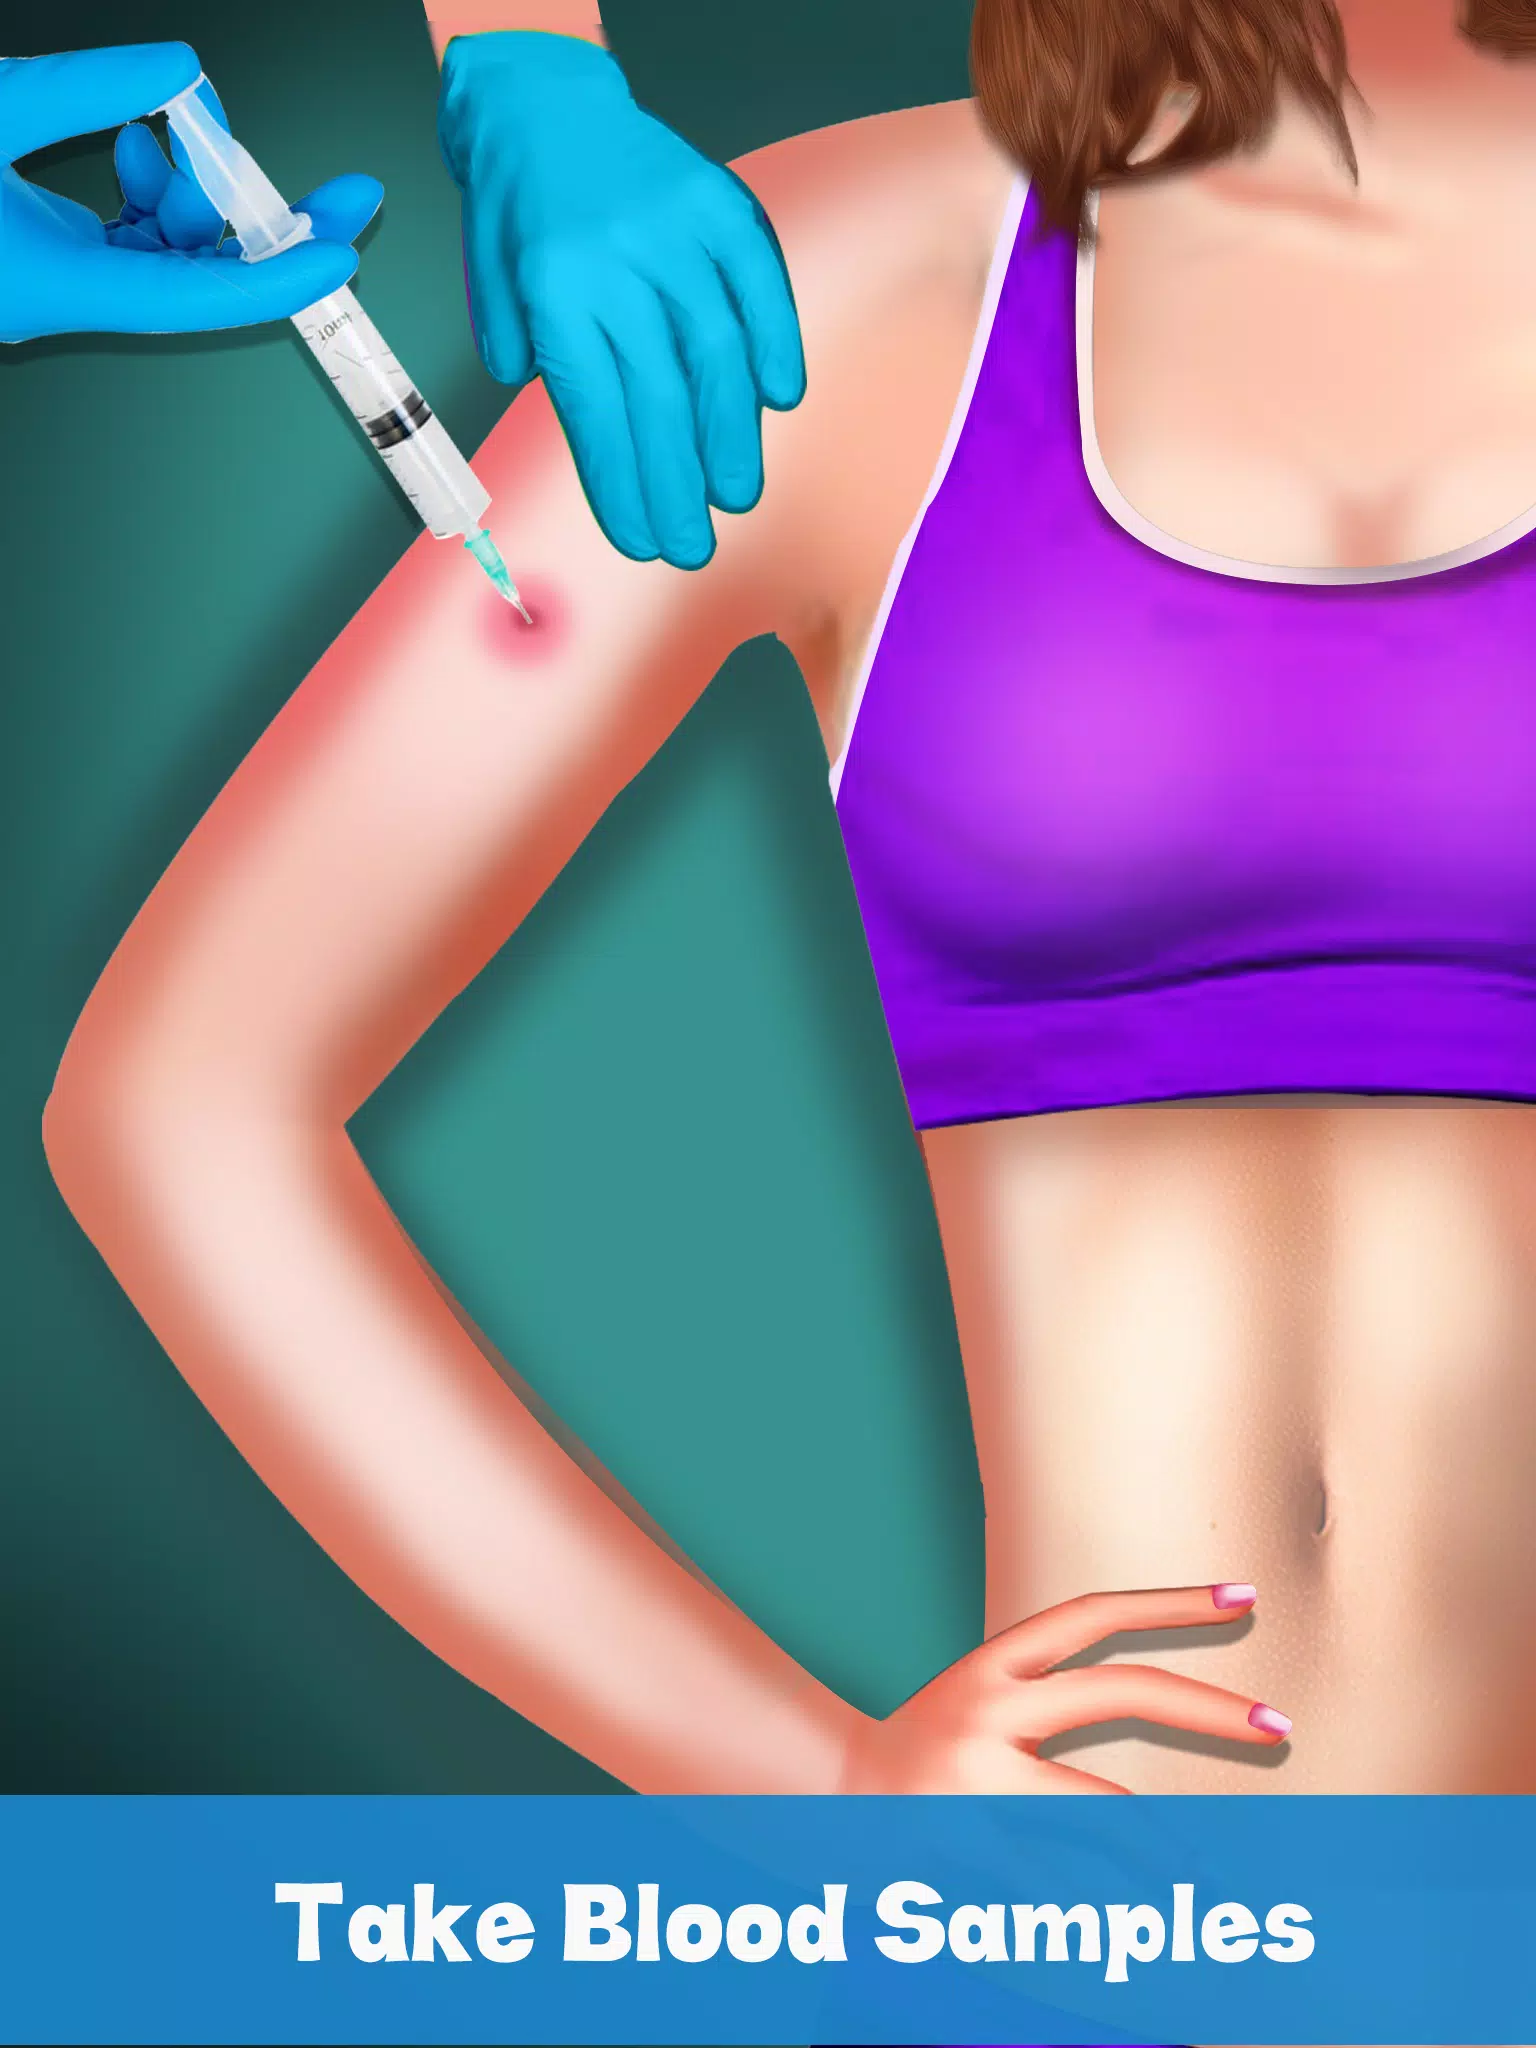 Simulador de médico de injeção – Apps no Google Play